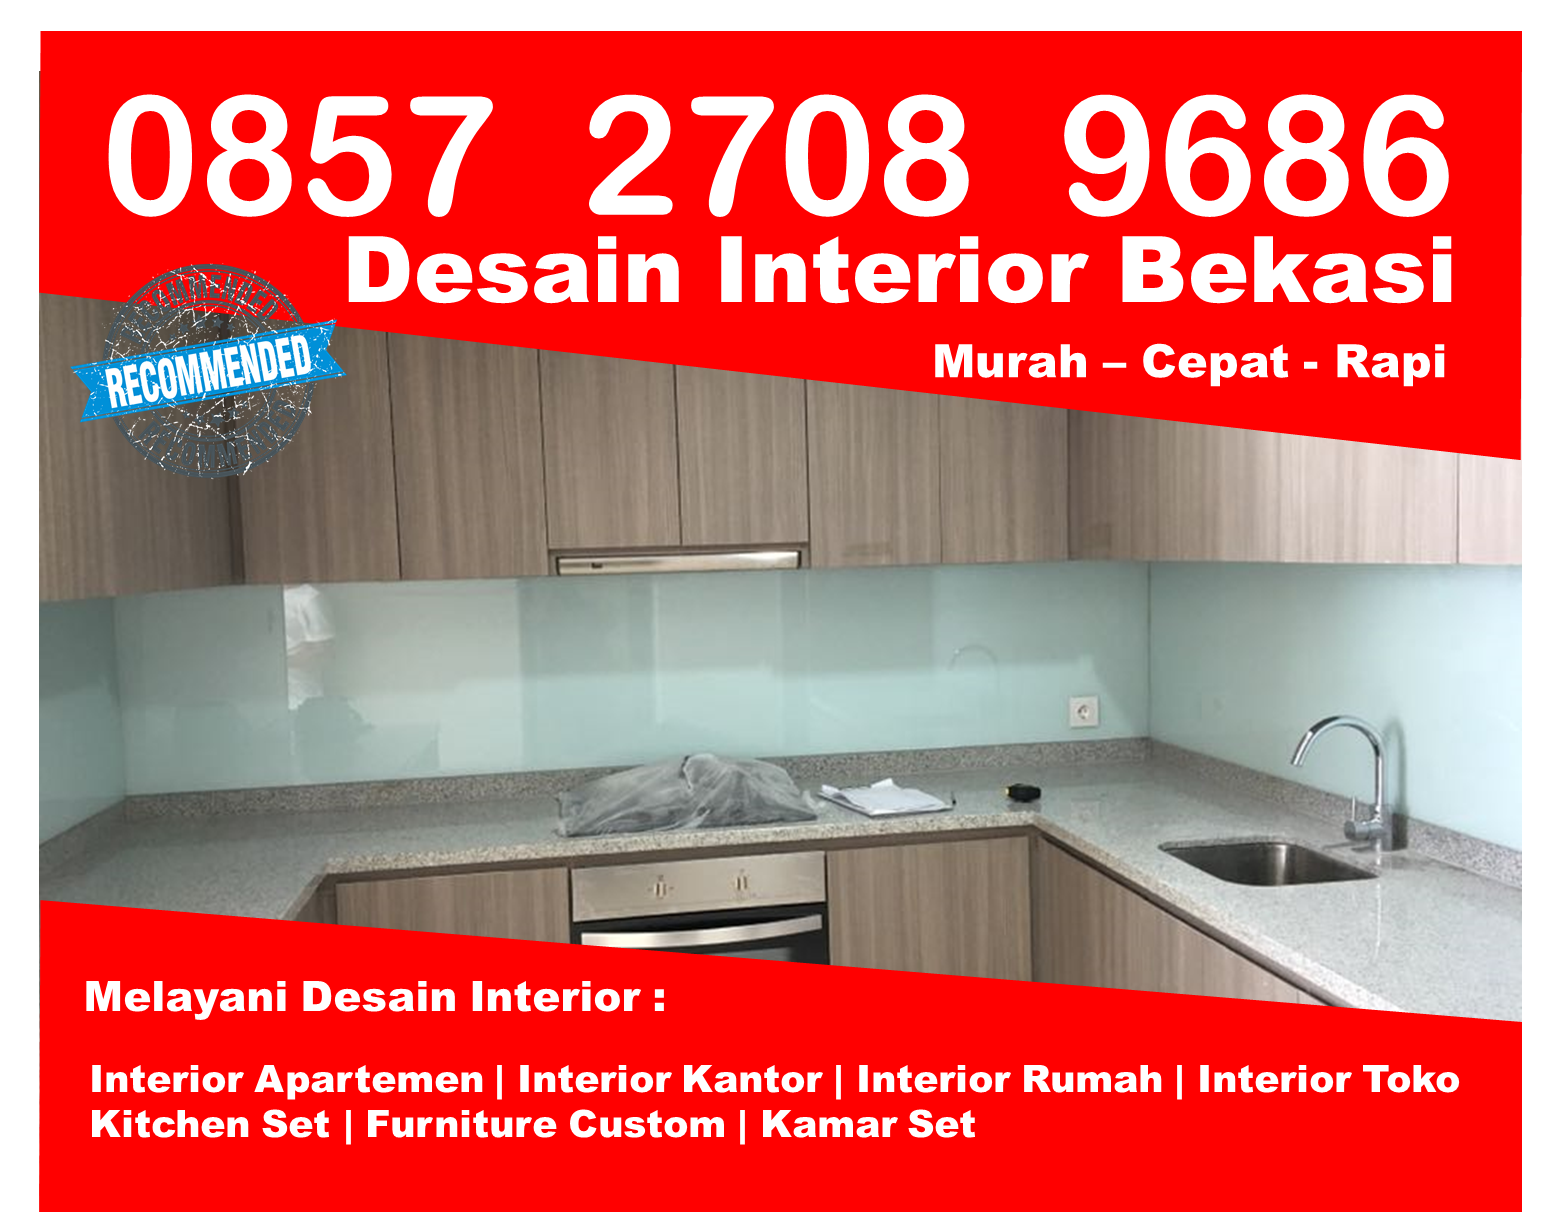 Telp 0857 2708 9686 Indosat Design Interior Apartment 2 Kamar